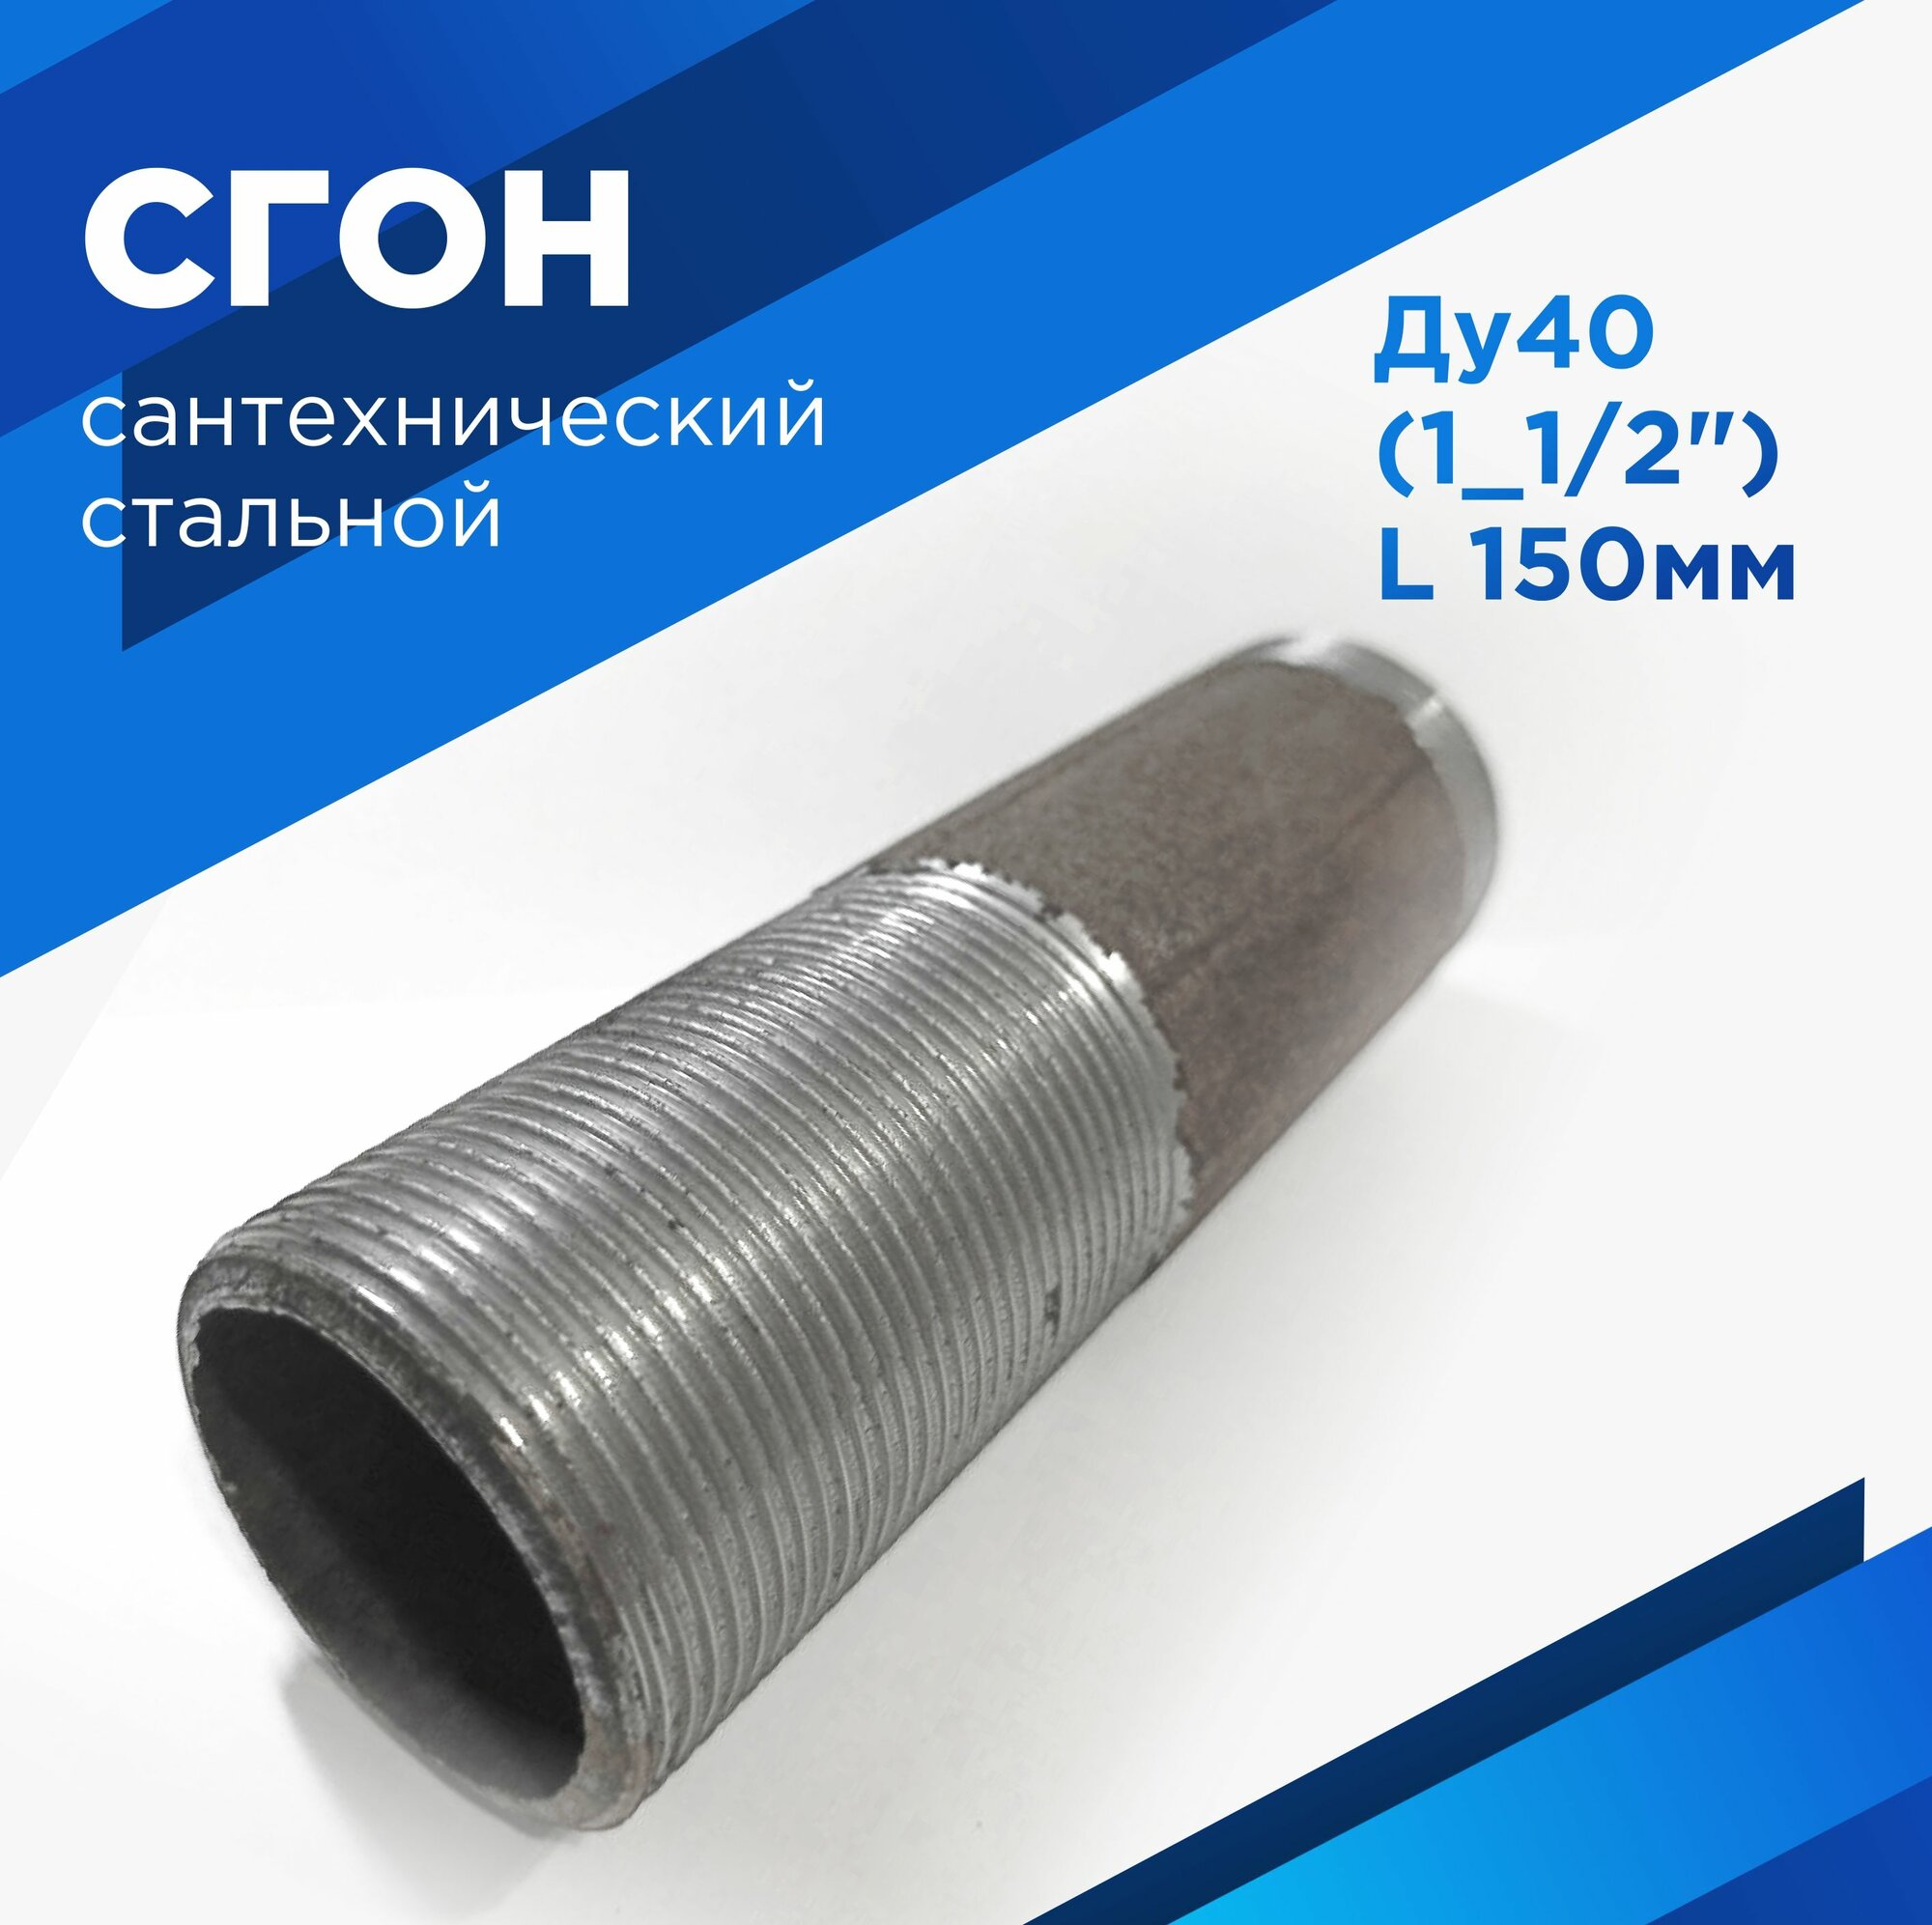 Сгон сантехнический 1" 1/2 стальной ДУ-40мм, L-150 мм ГОСТ 8969-75